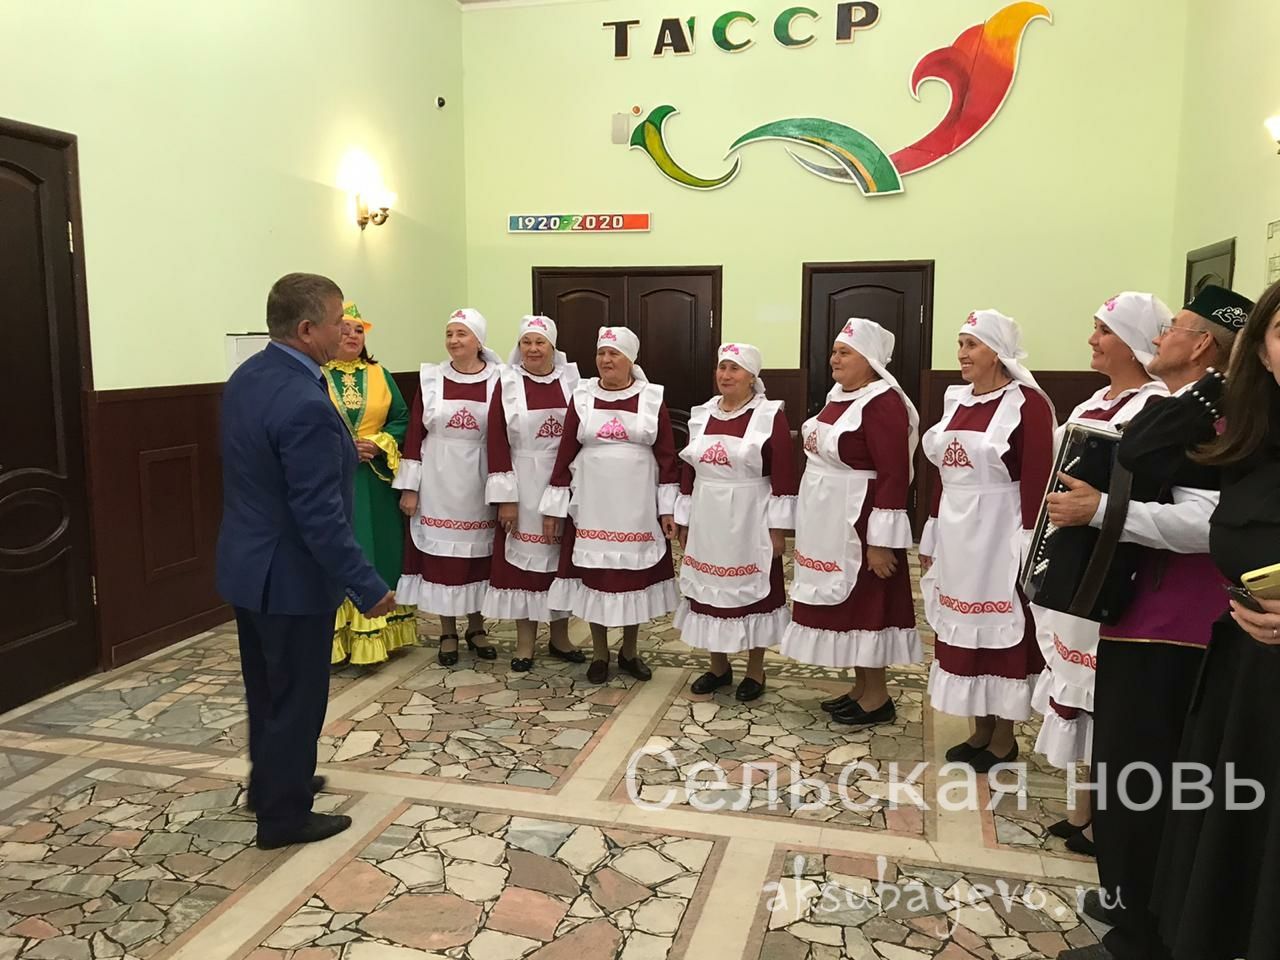 В Аксубаеве состоялась встреча специалистов культуры с главой района